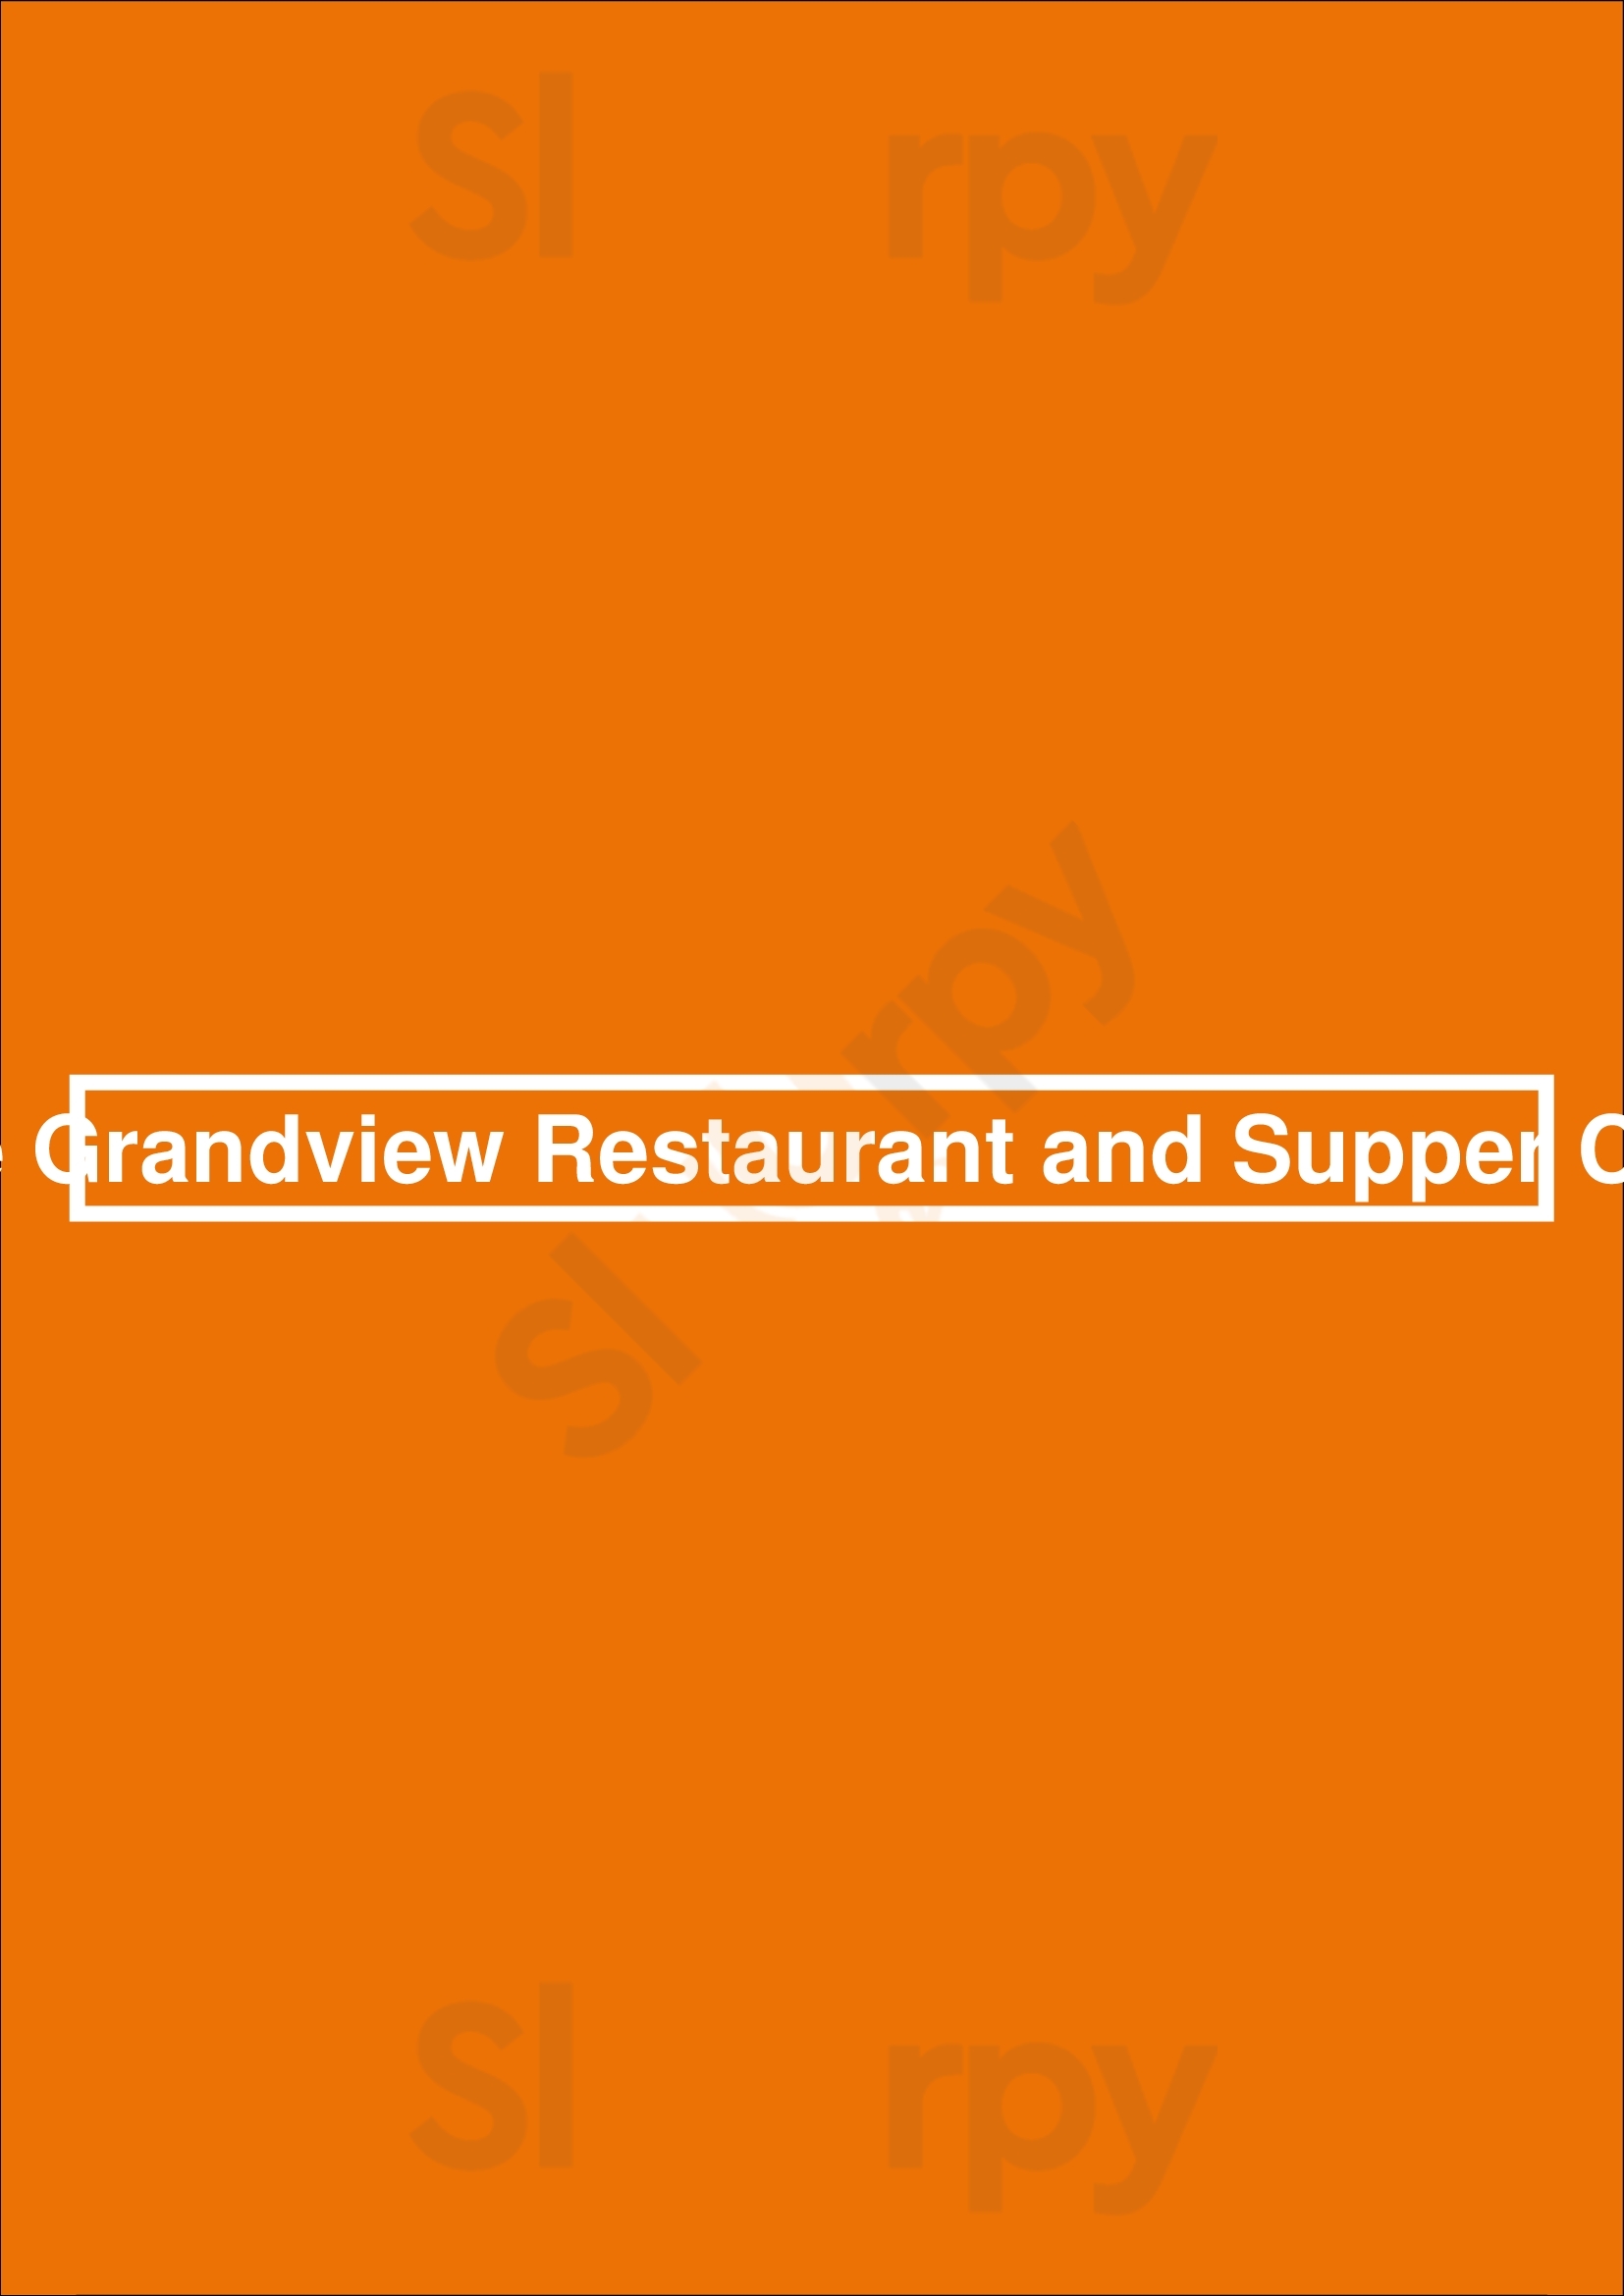 The Grandview Restaurant Lake Geneva Menu - 1